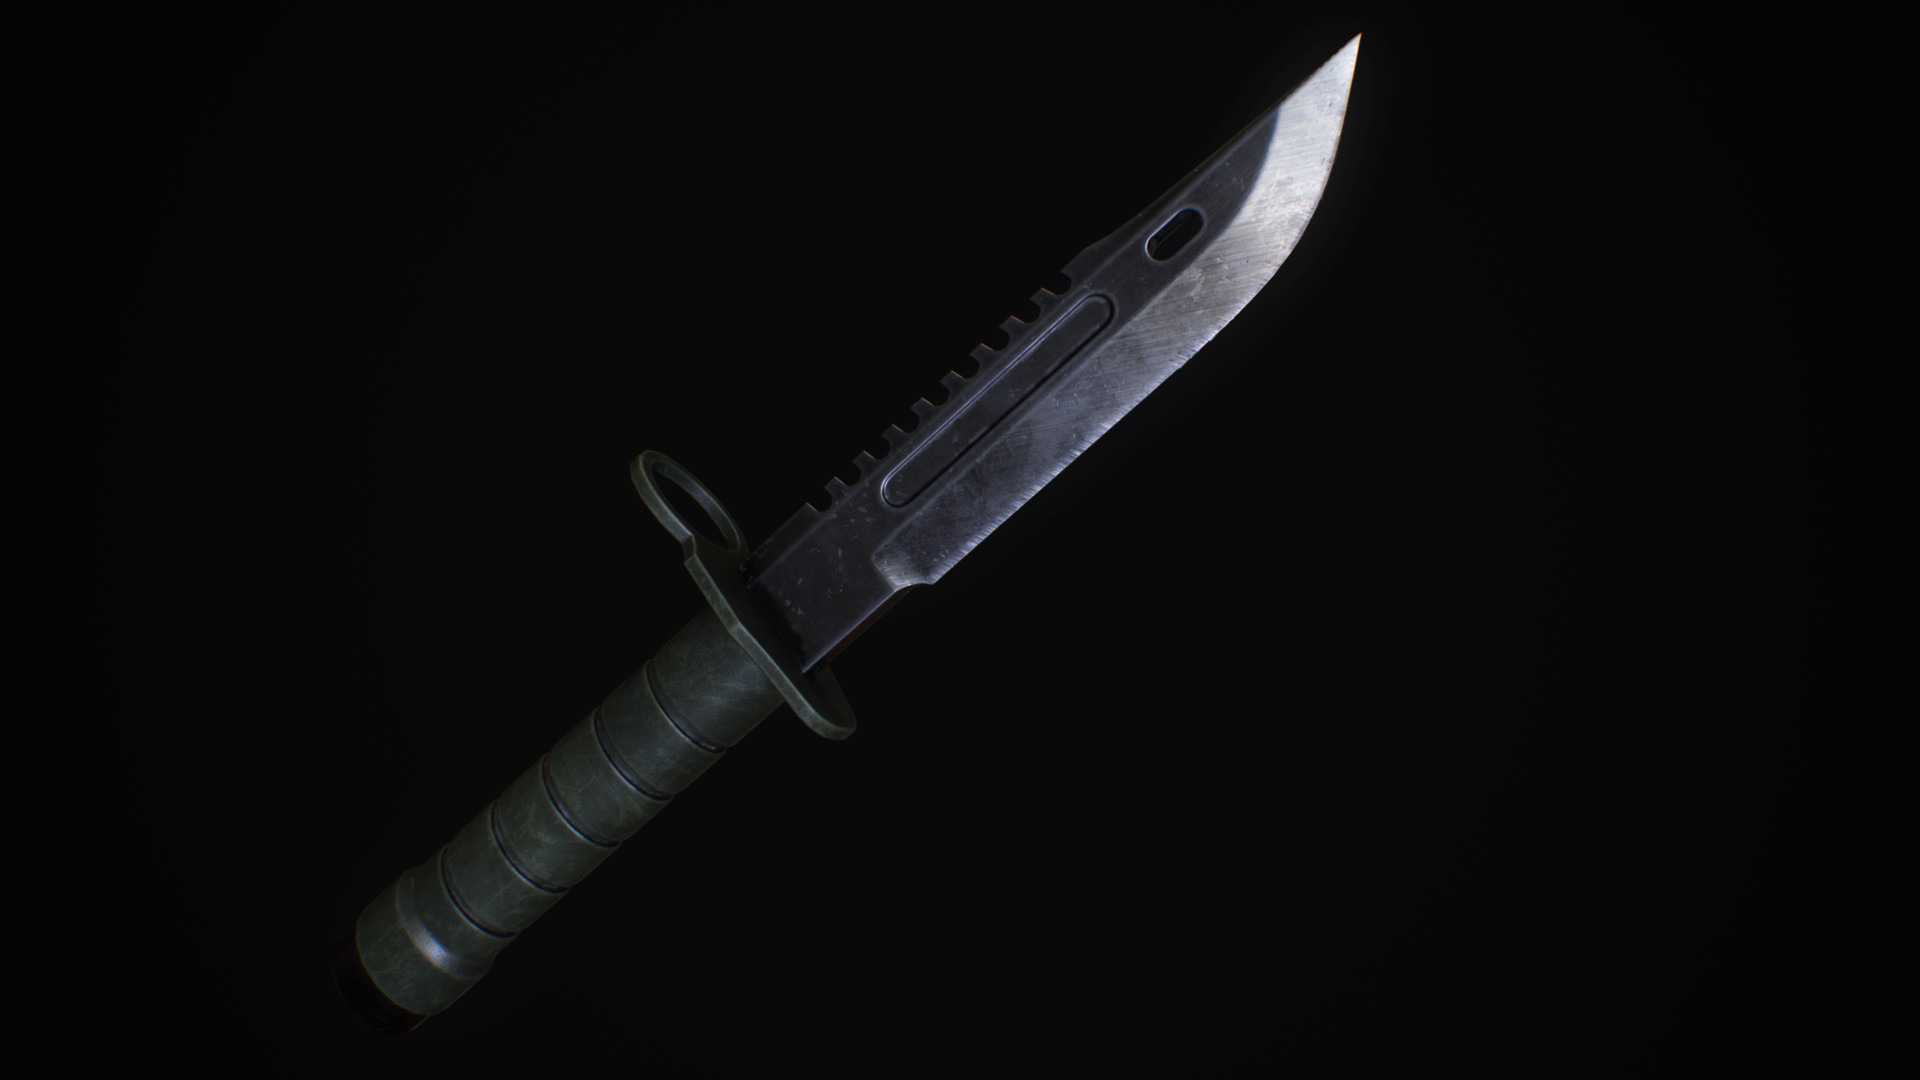 ArtStation - Fighting Knife from Resident Evil